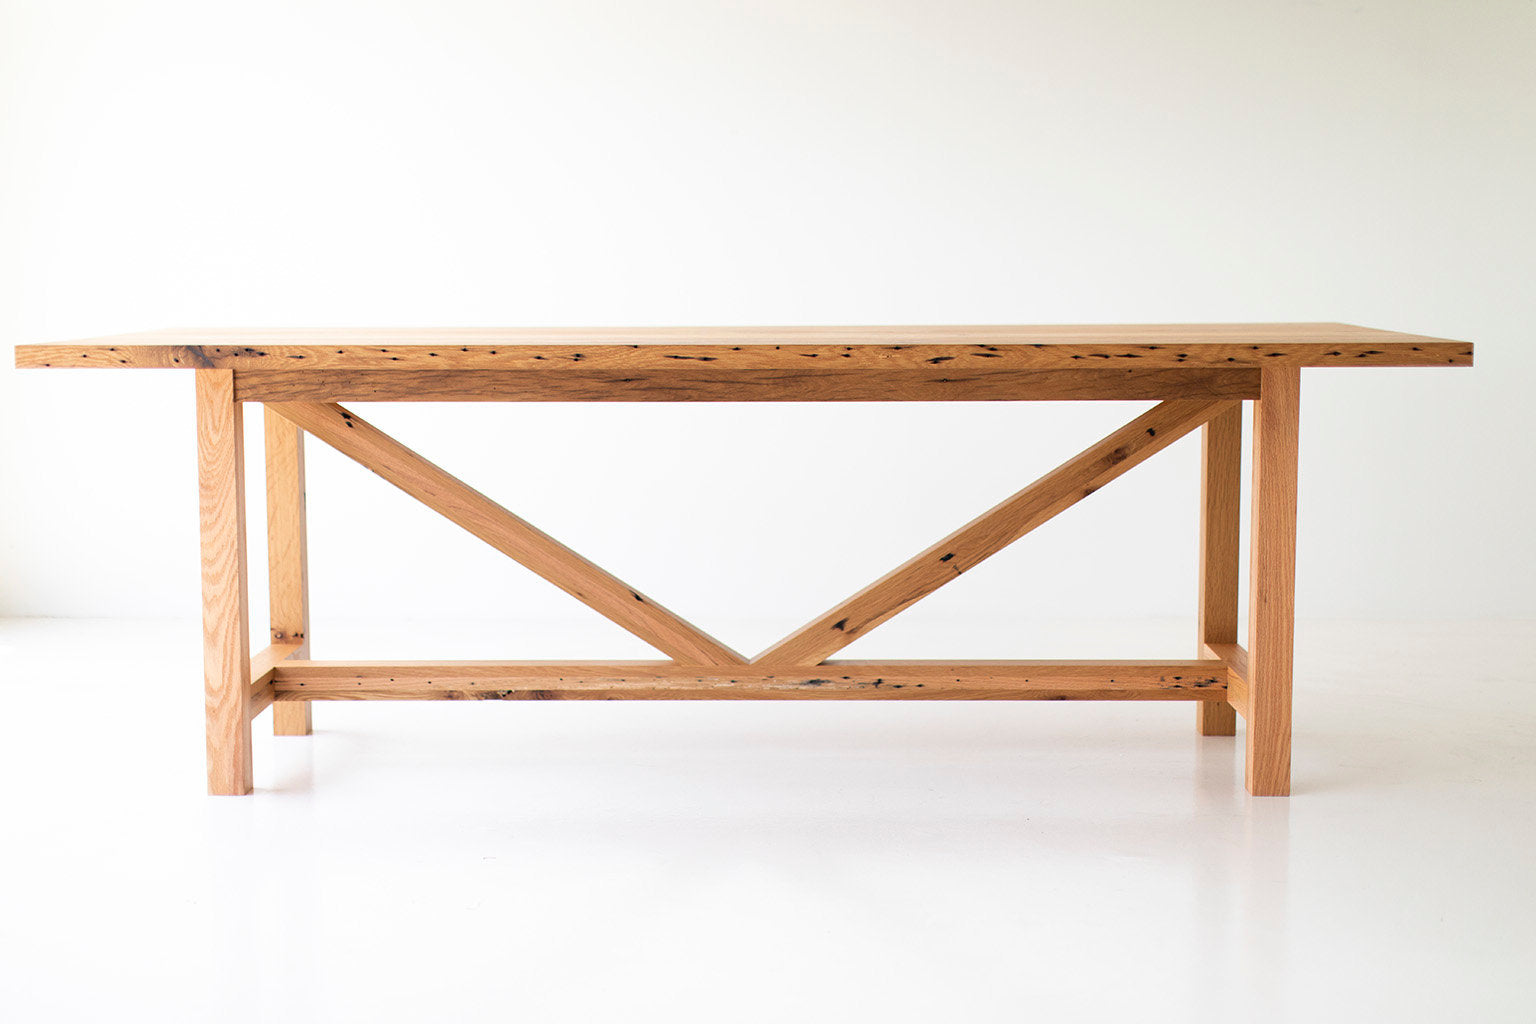 The Farmhouse Dining Table - 0618 - Reclaimed Oak